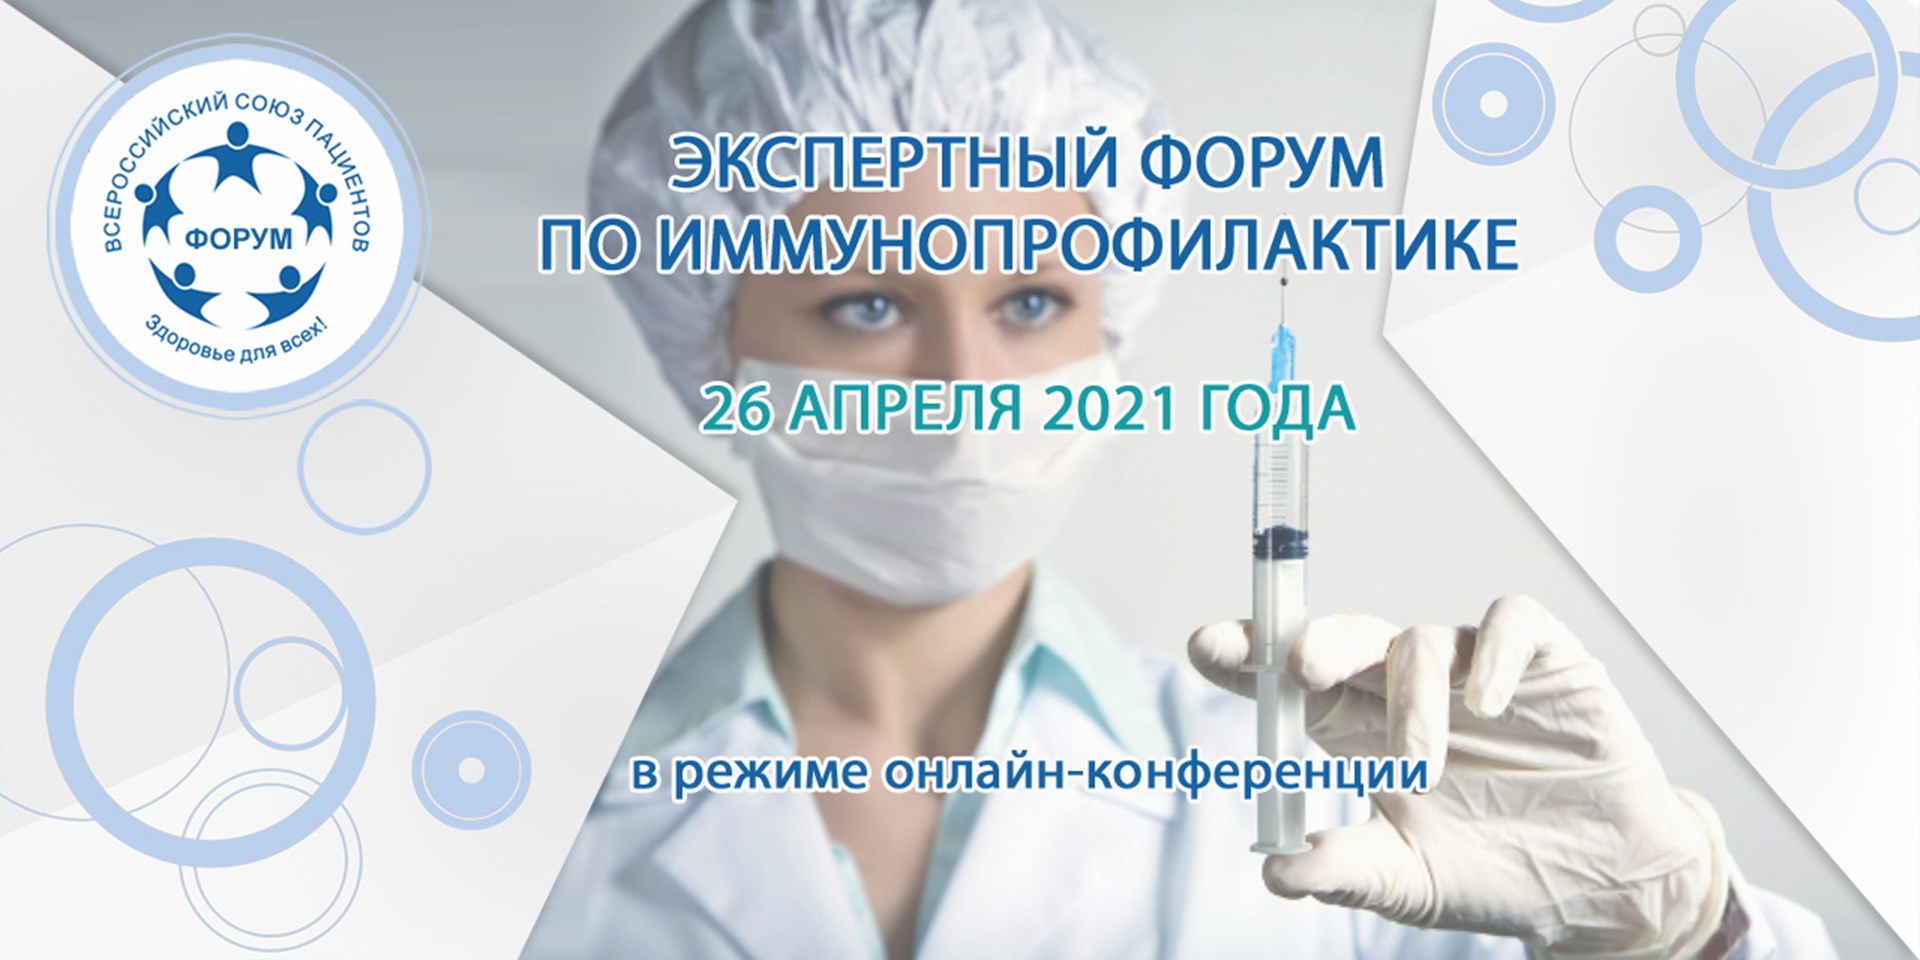 26.04.2021 Москва. Экспертный форум по иммунопрофилактике